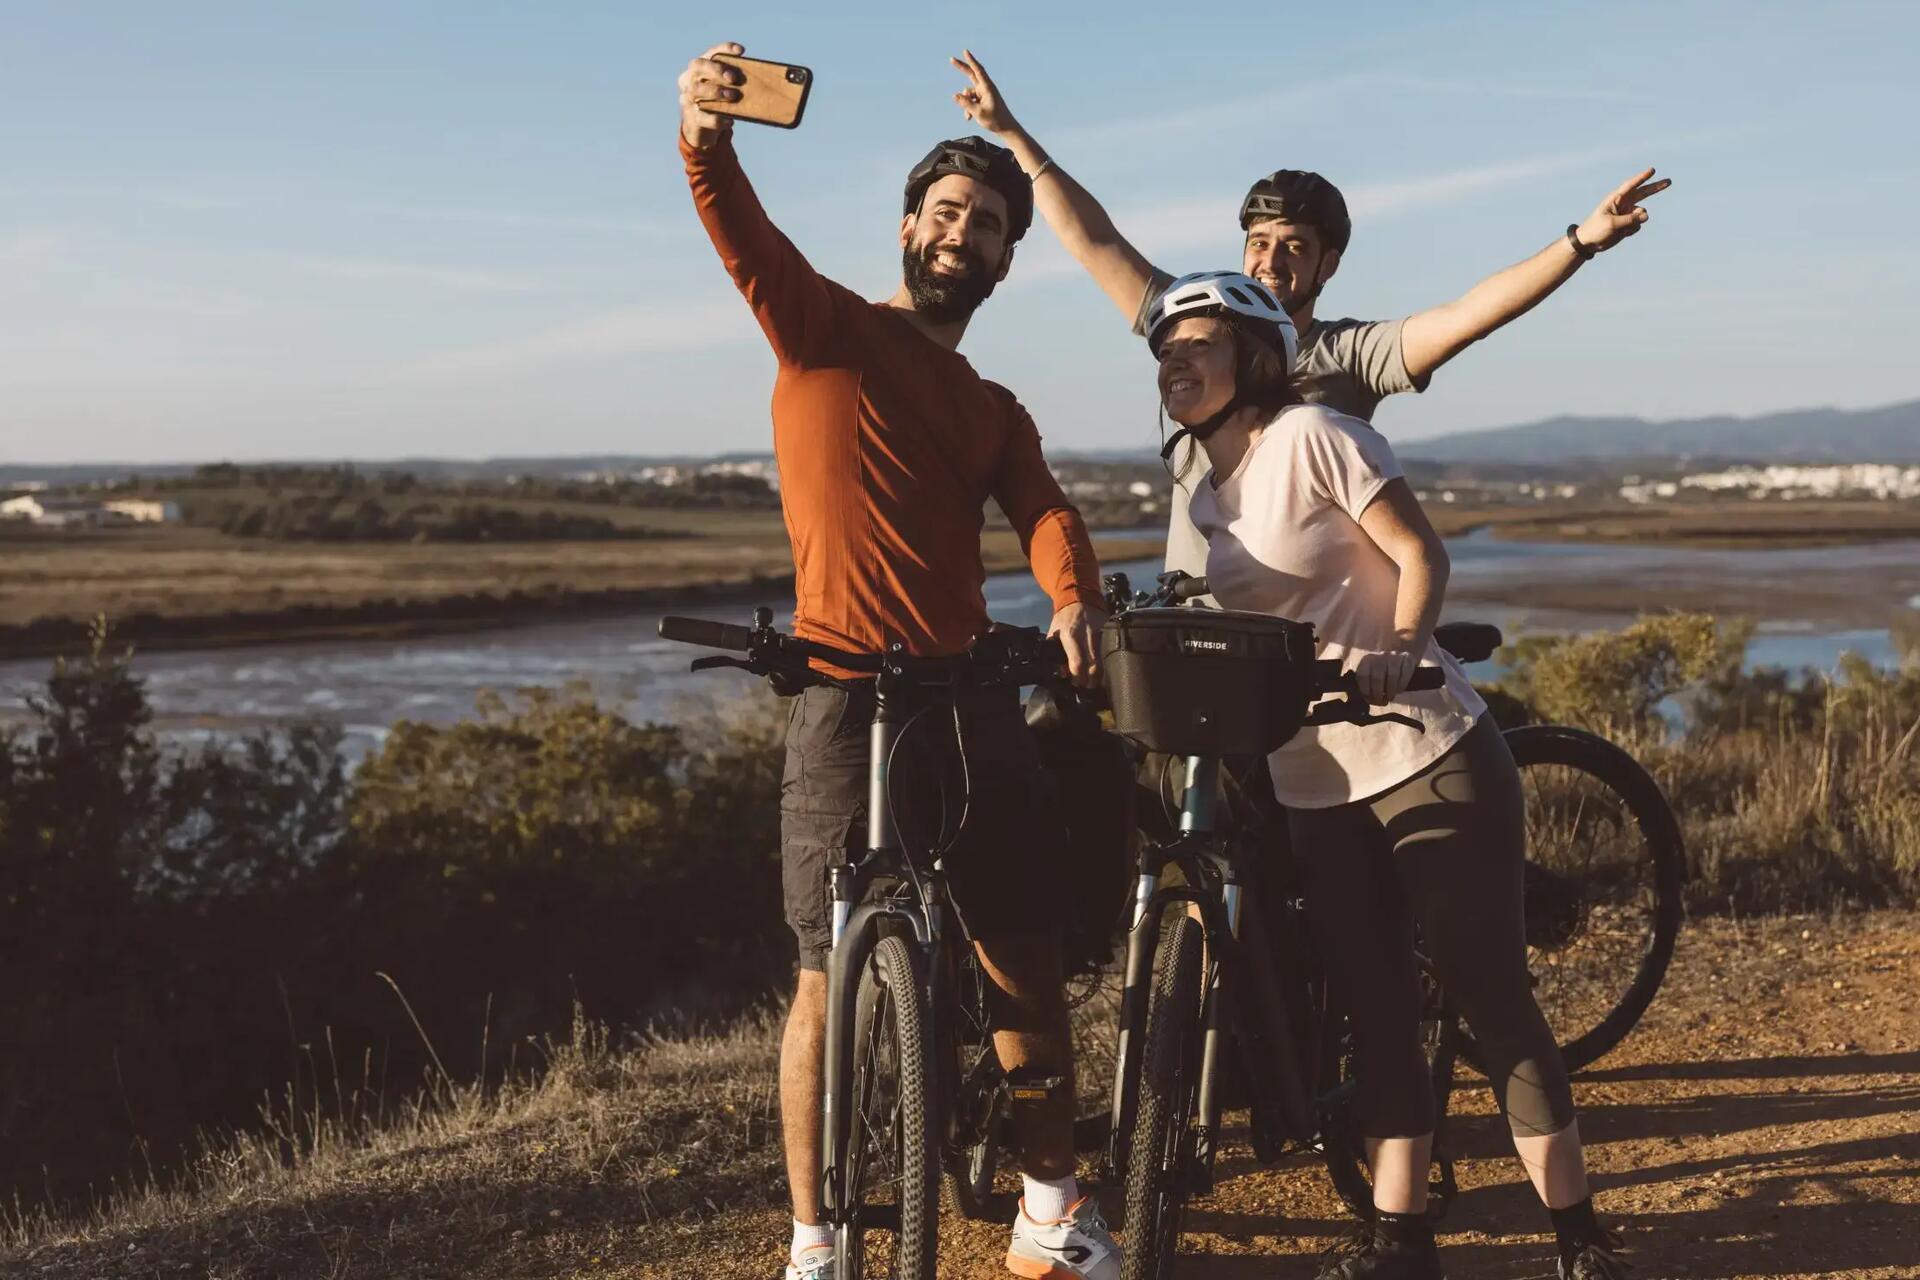 Ludzie w strojach sportowych i kaskach rowerowych  robiący sobie selfie w trakcie wyprawy rowerowej na rowerach elektrycznych  na tle rzeki